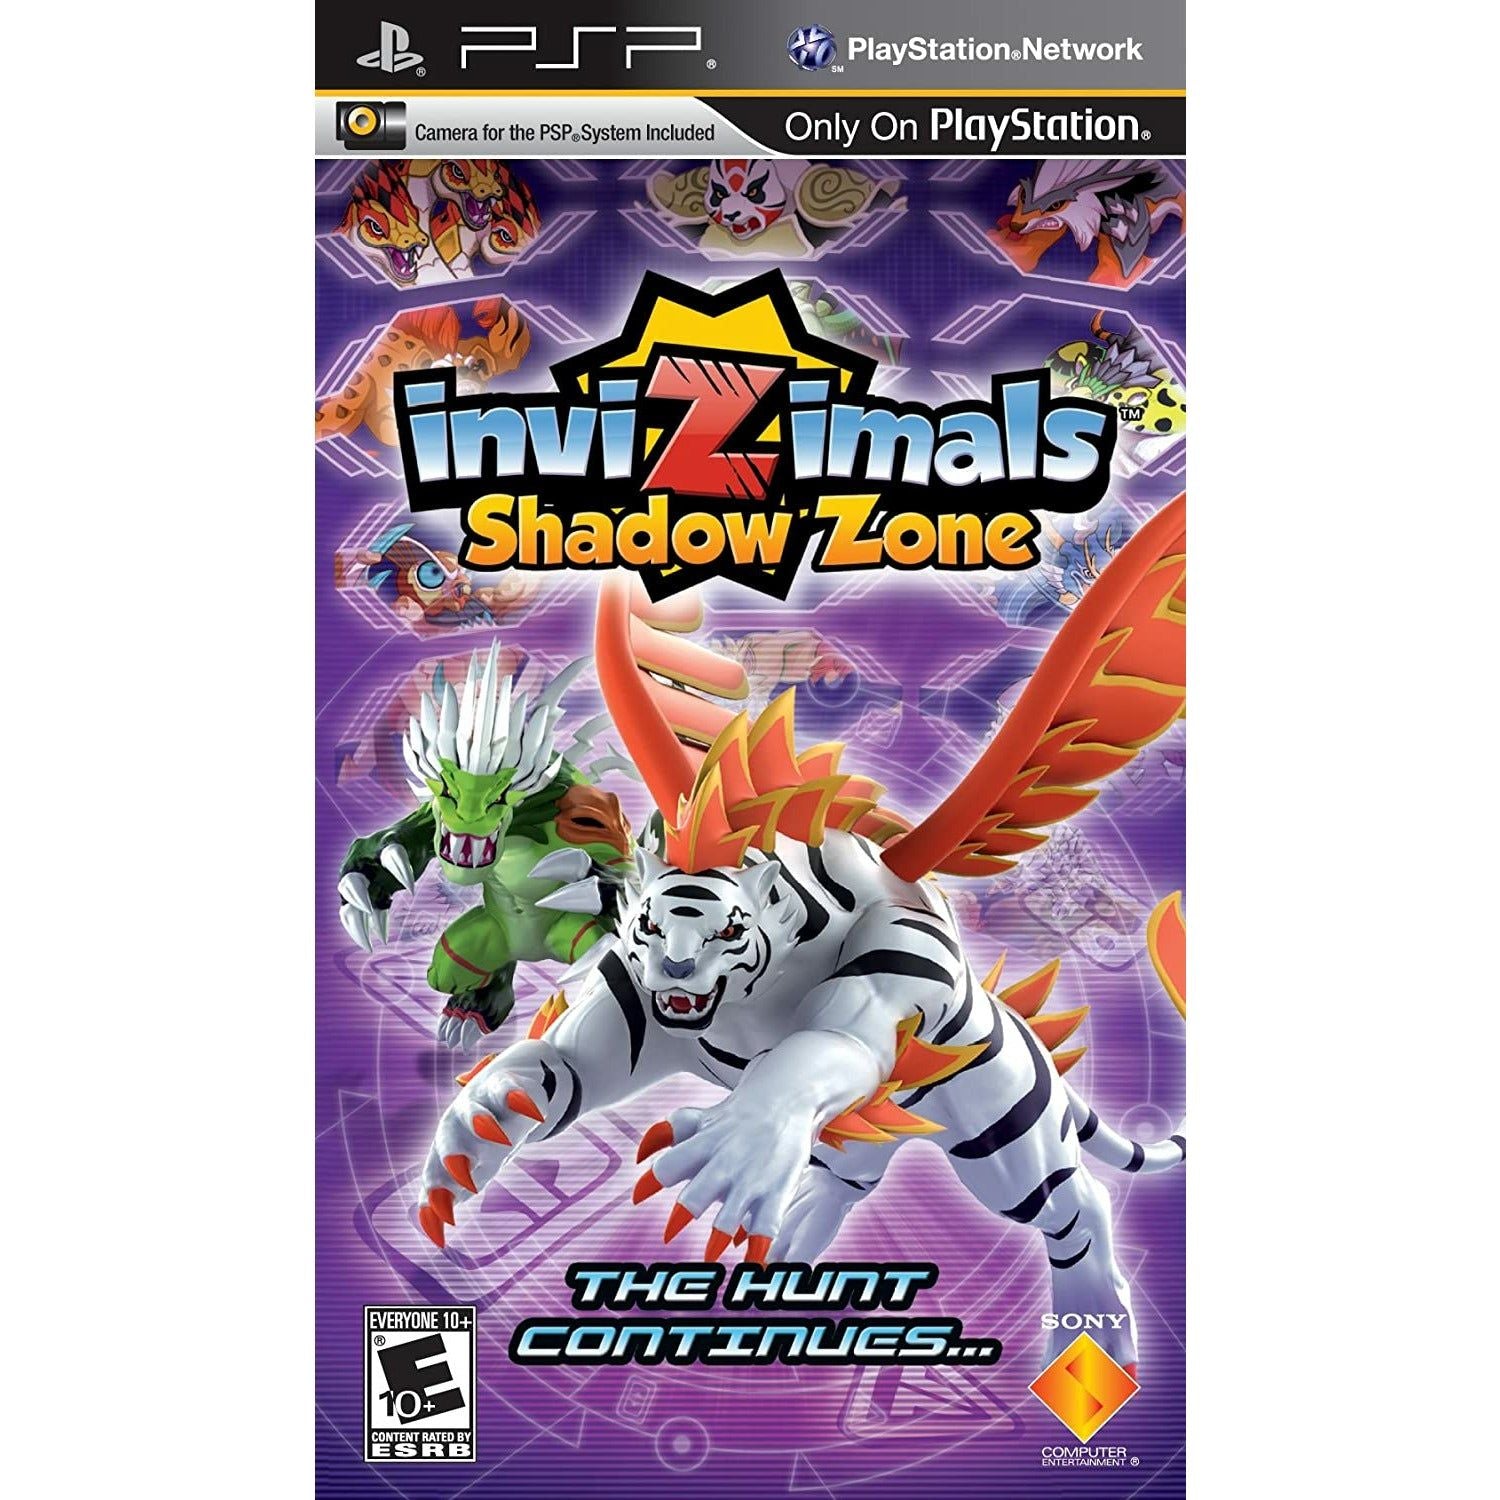 PSP - Invizimals Shadow Zone (nécessite une caméra PSP) (pas de caméra)